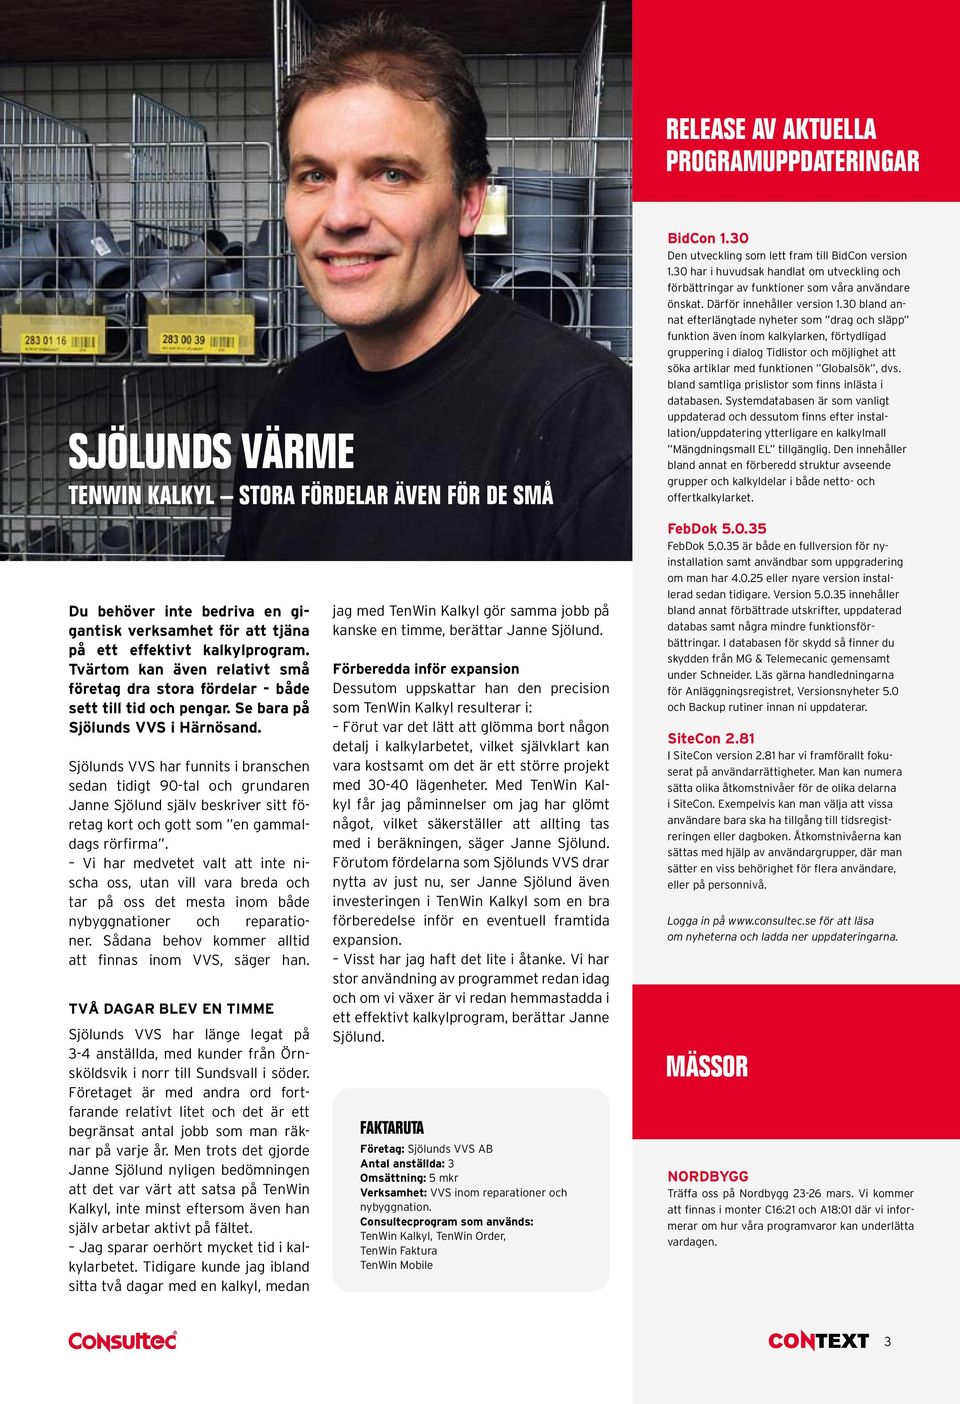 Sjölunds VVS har funnits i branschen sedan tidigt 90-tal och grundaren Janne Sjölund själv beskriver sitt företag kort och gott som en gammaldags rörfirma.